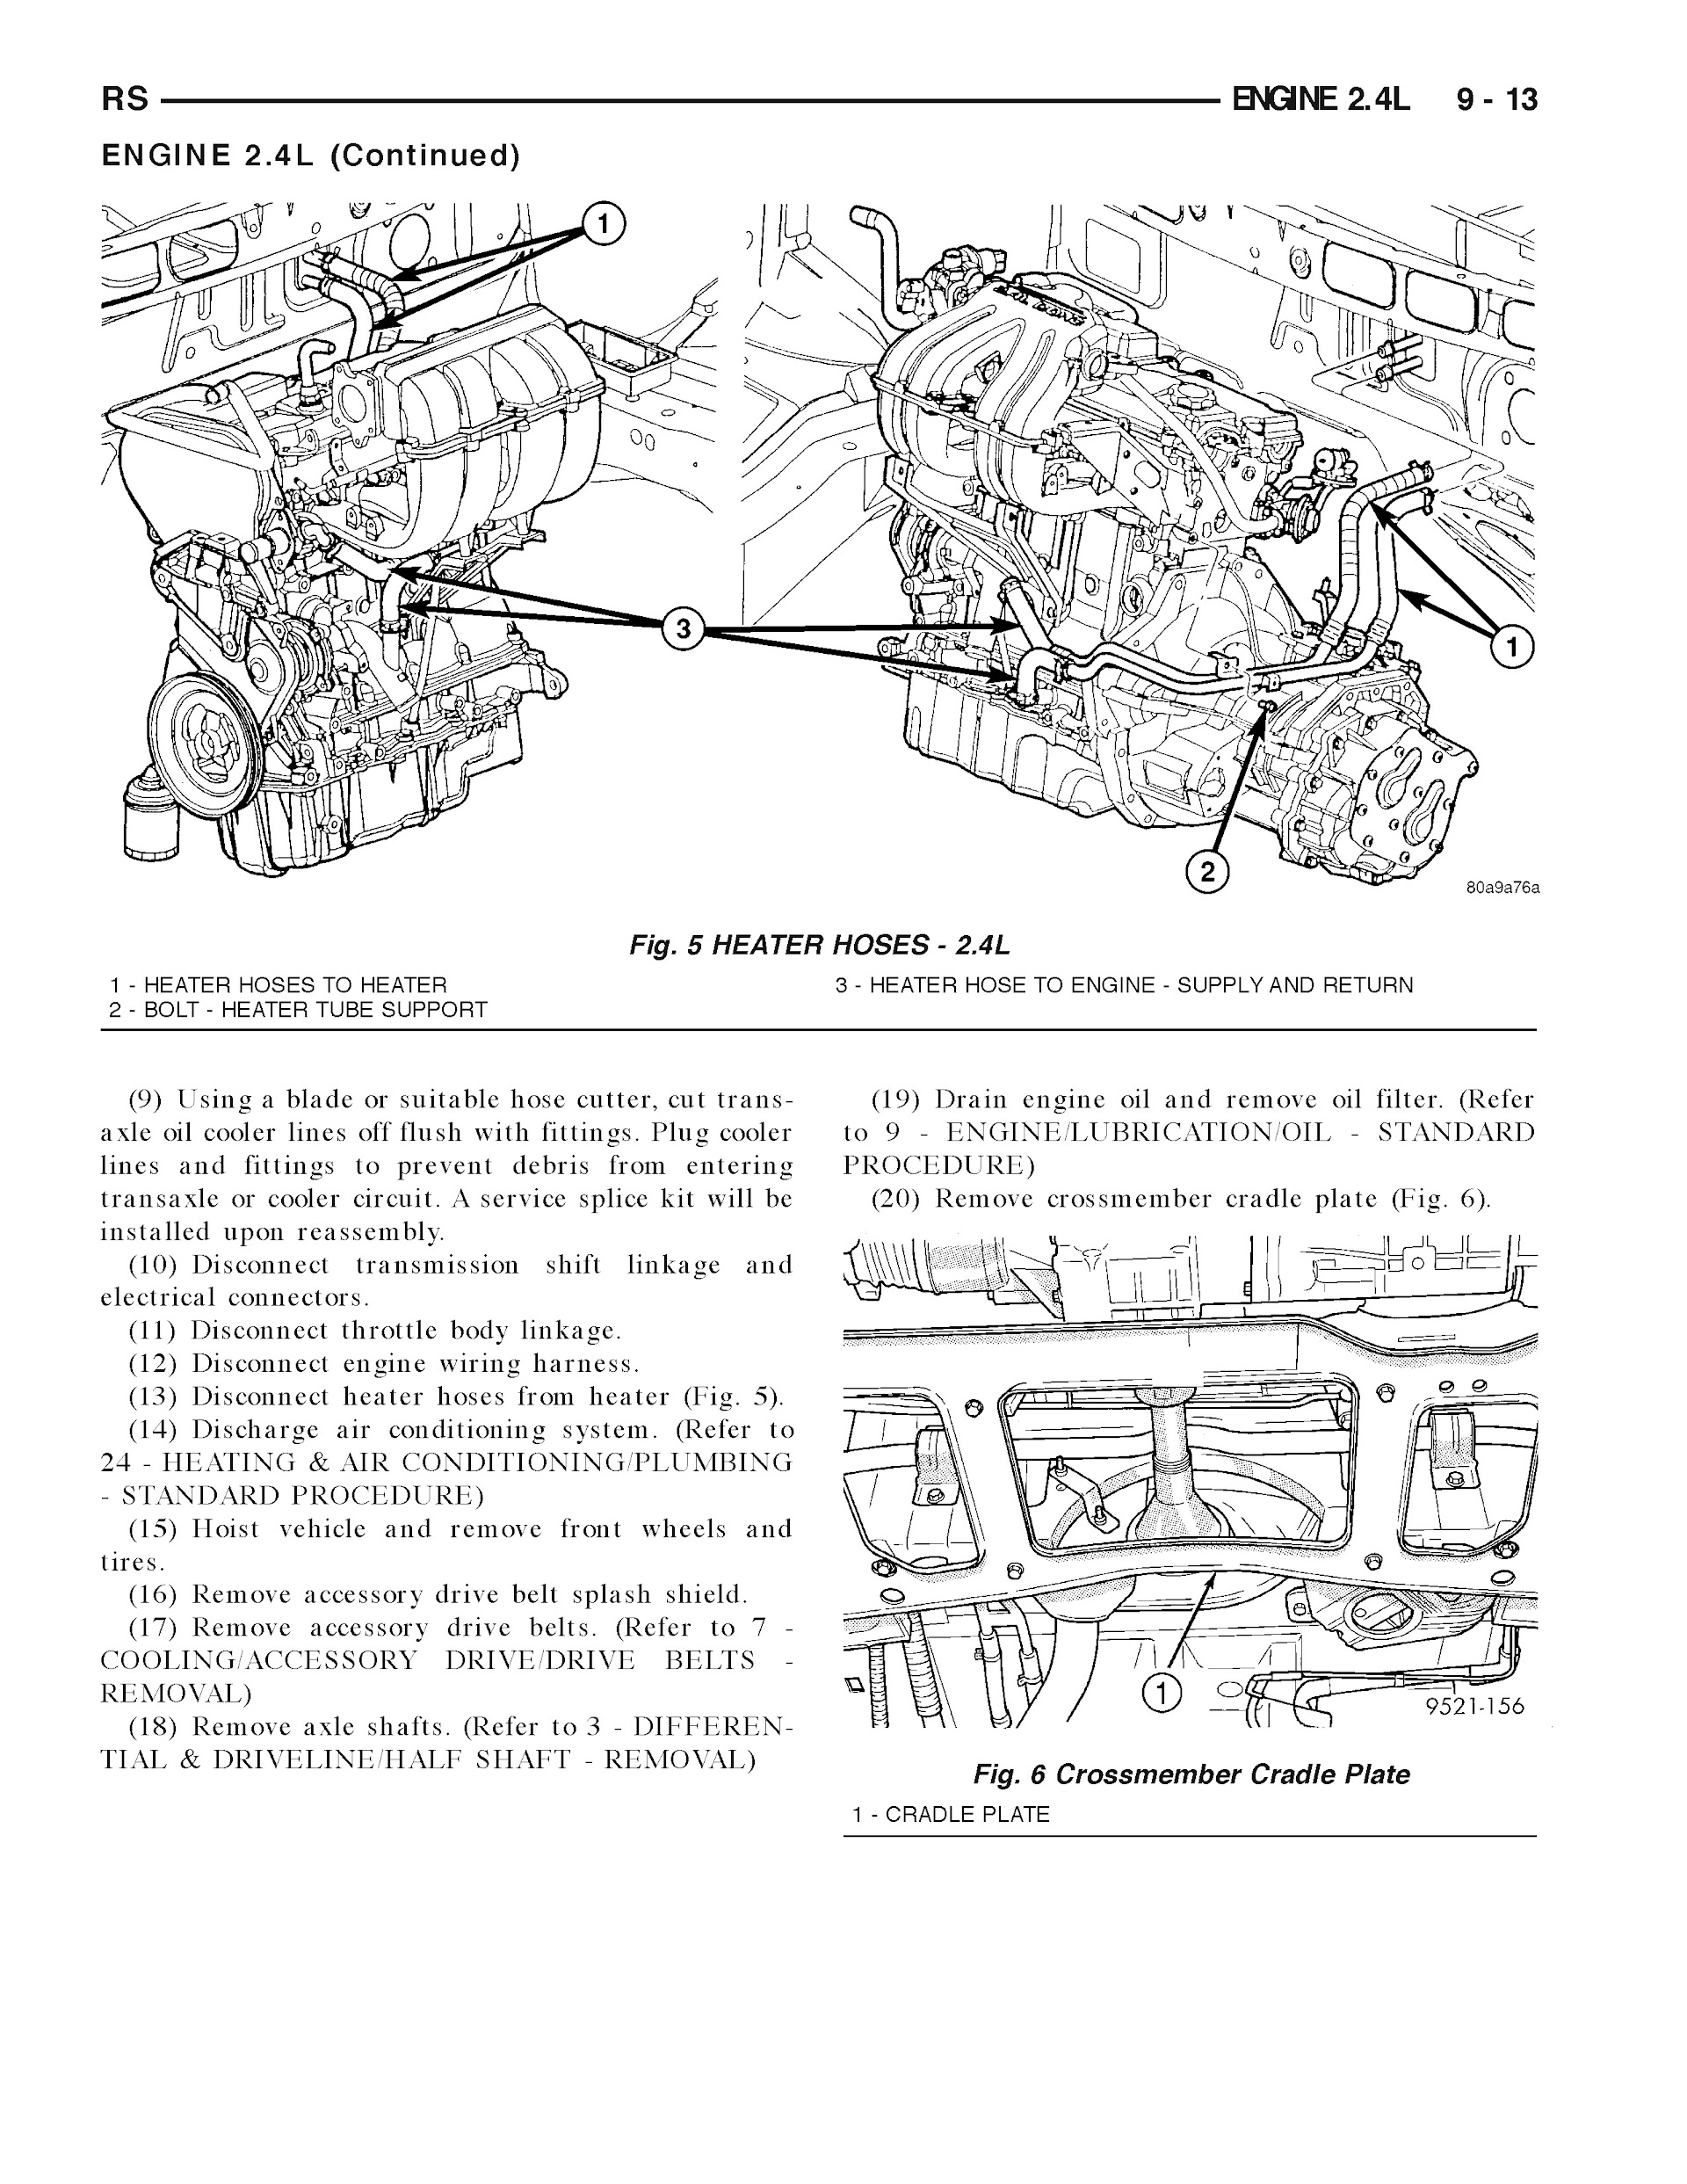 2005-2006 Dodge Grand Caravan Repair Manual, Engine 2.4L